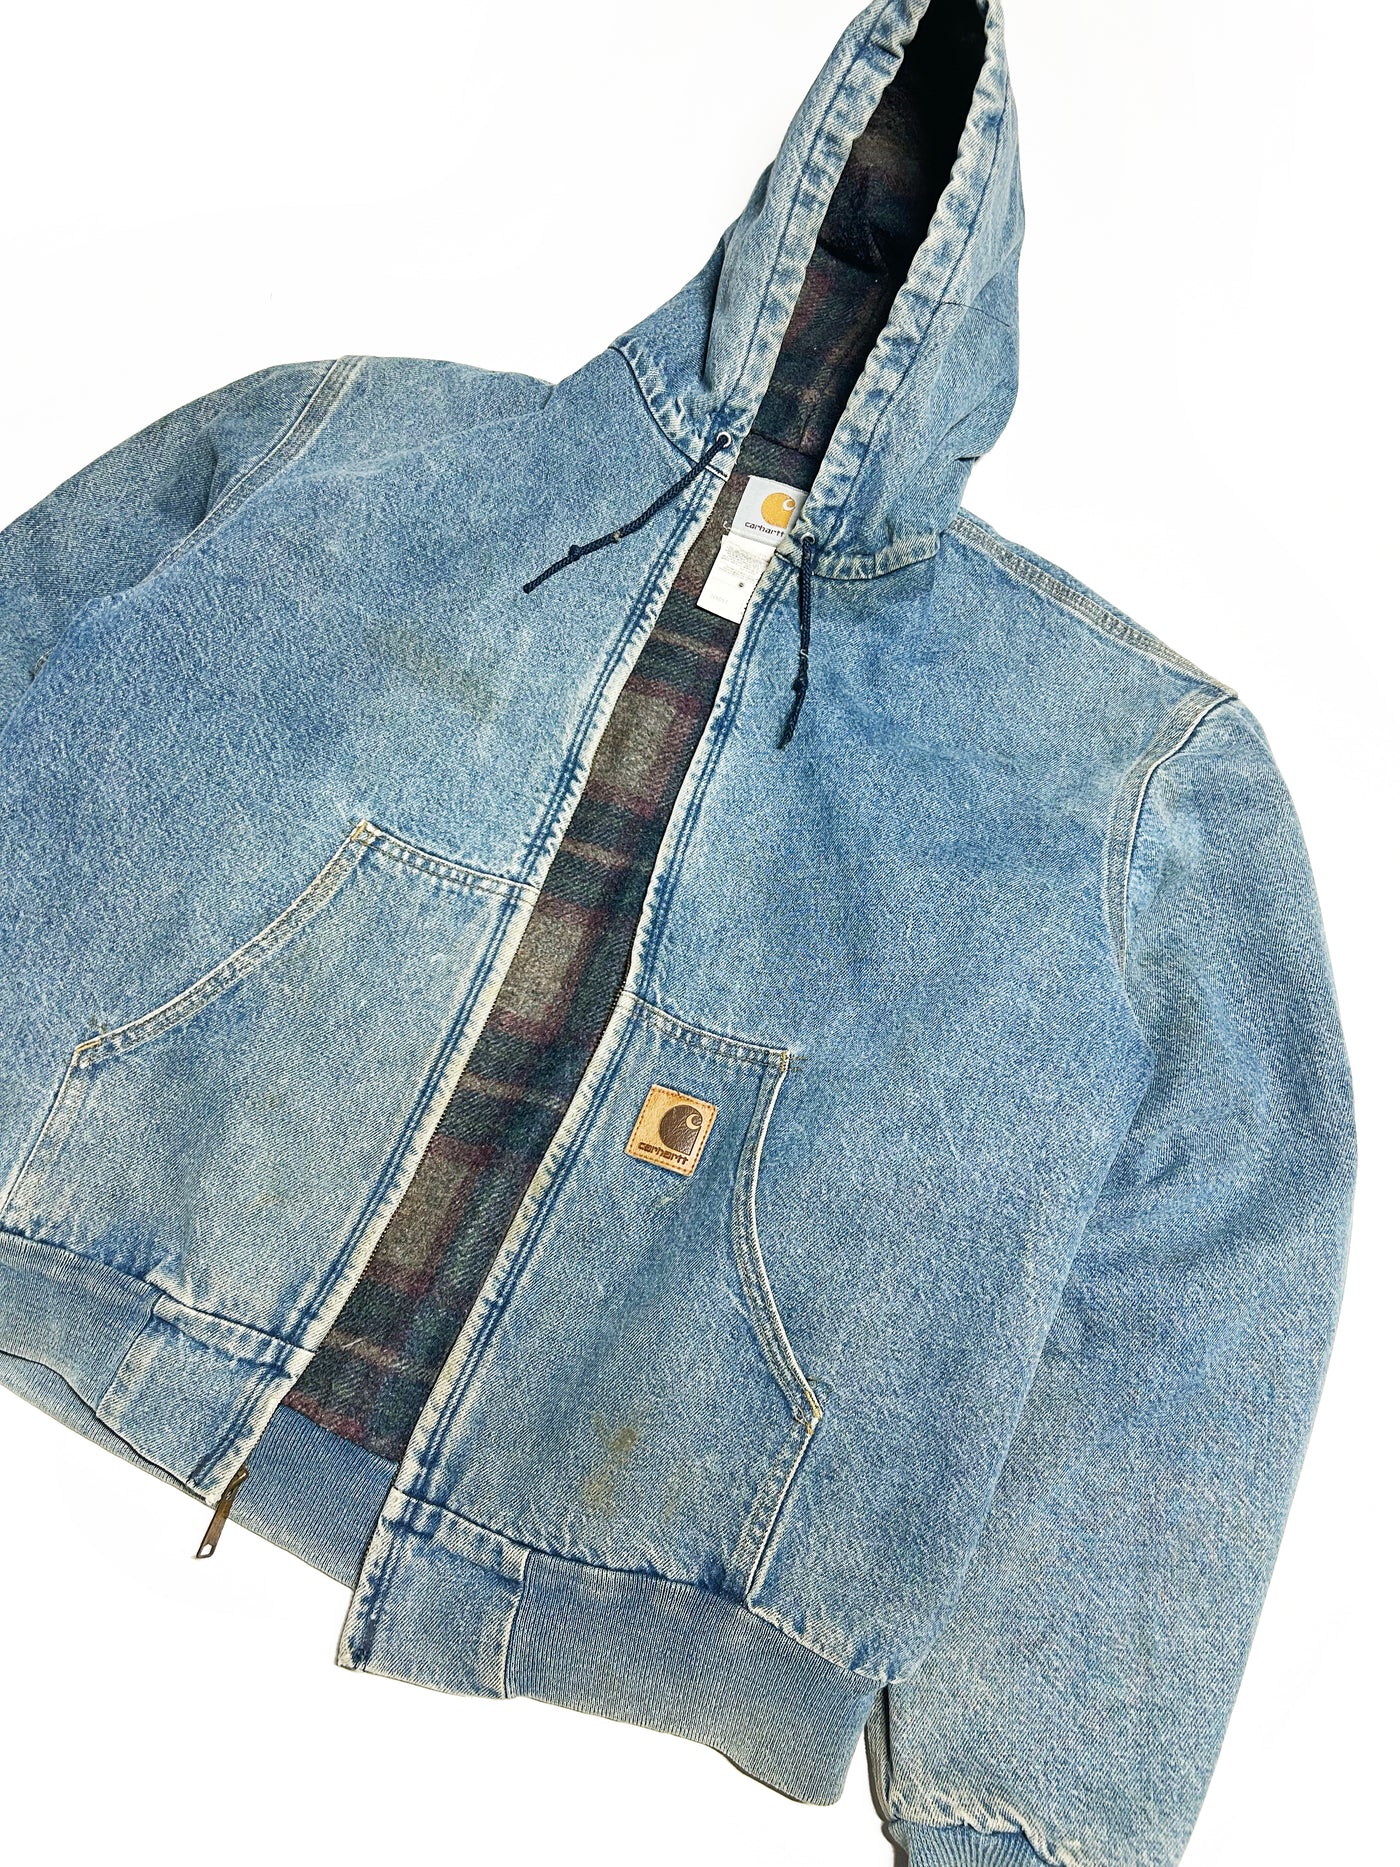 Vintage 90s Carhartt A$AP Denim Jacket